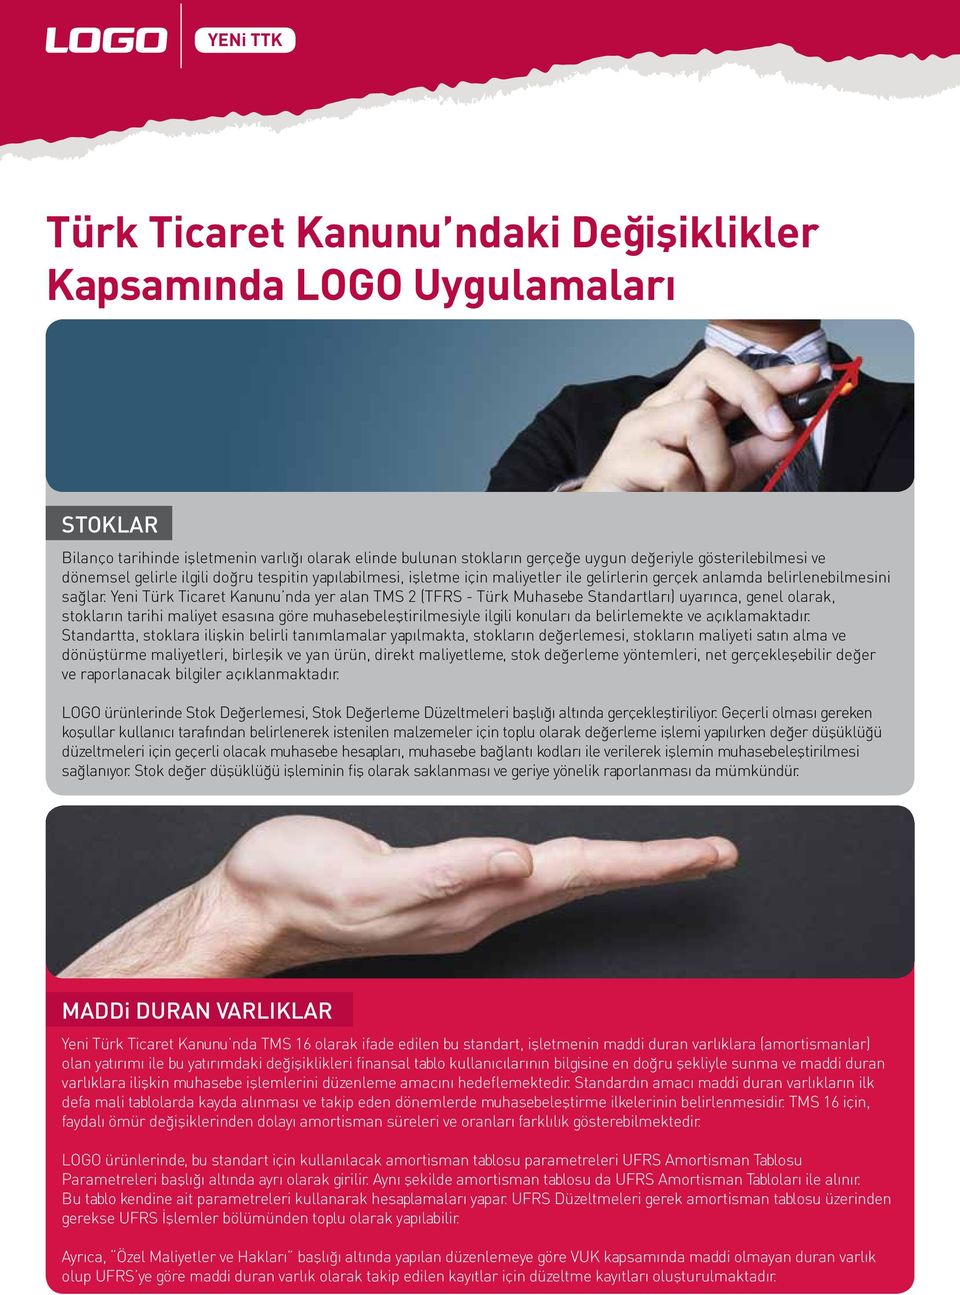 Yeni Türk Ticaret Kanunu nda yer alan TMS 2 (TFRS - Türk Muhasebe Standartları) uyarınca, genel olarak, stokların tarihi maliyet esasına göre muhasebeleştirilmesiyle ilgili konuları da belirlemekte